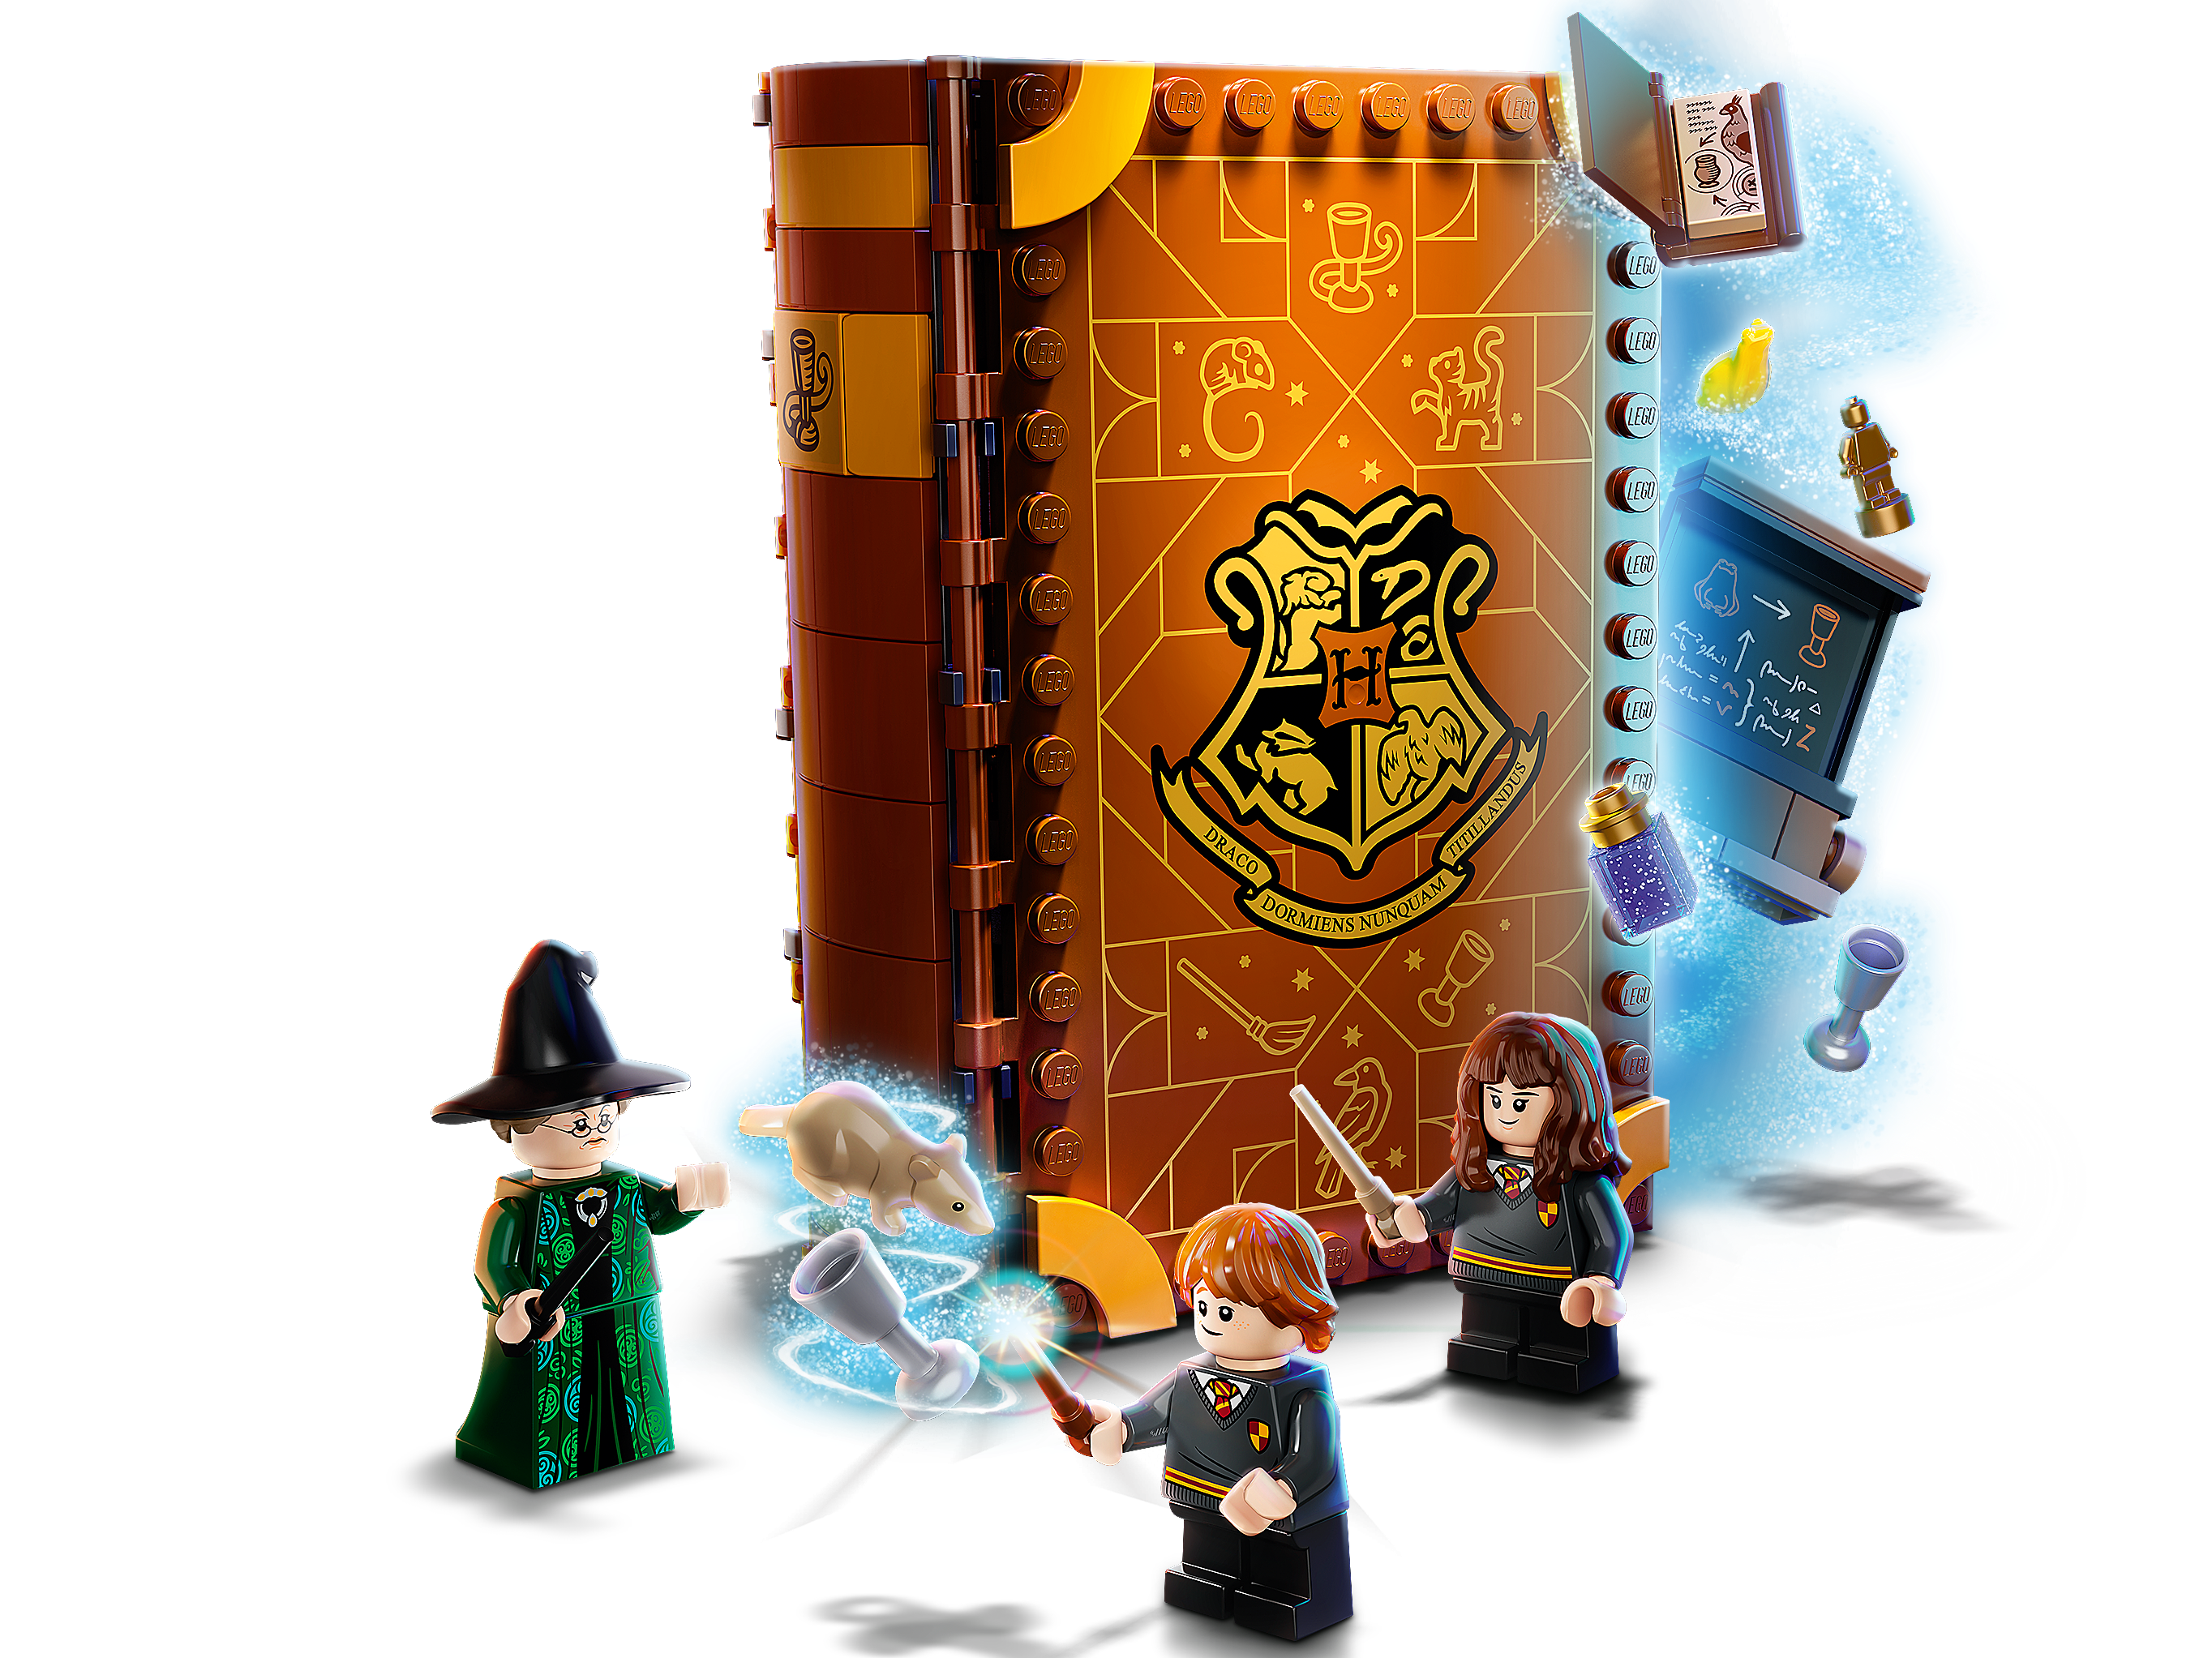 Nouveautés LEGO Harry Potter 2021 : les quatre livres Hogwarts Moment  sont en ligne - HOTH BRICKS